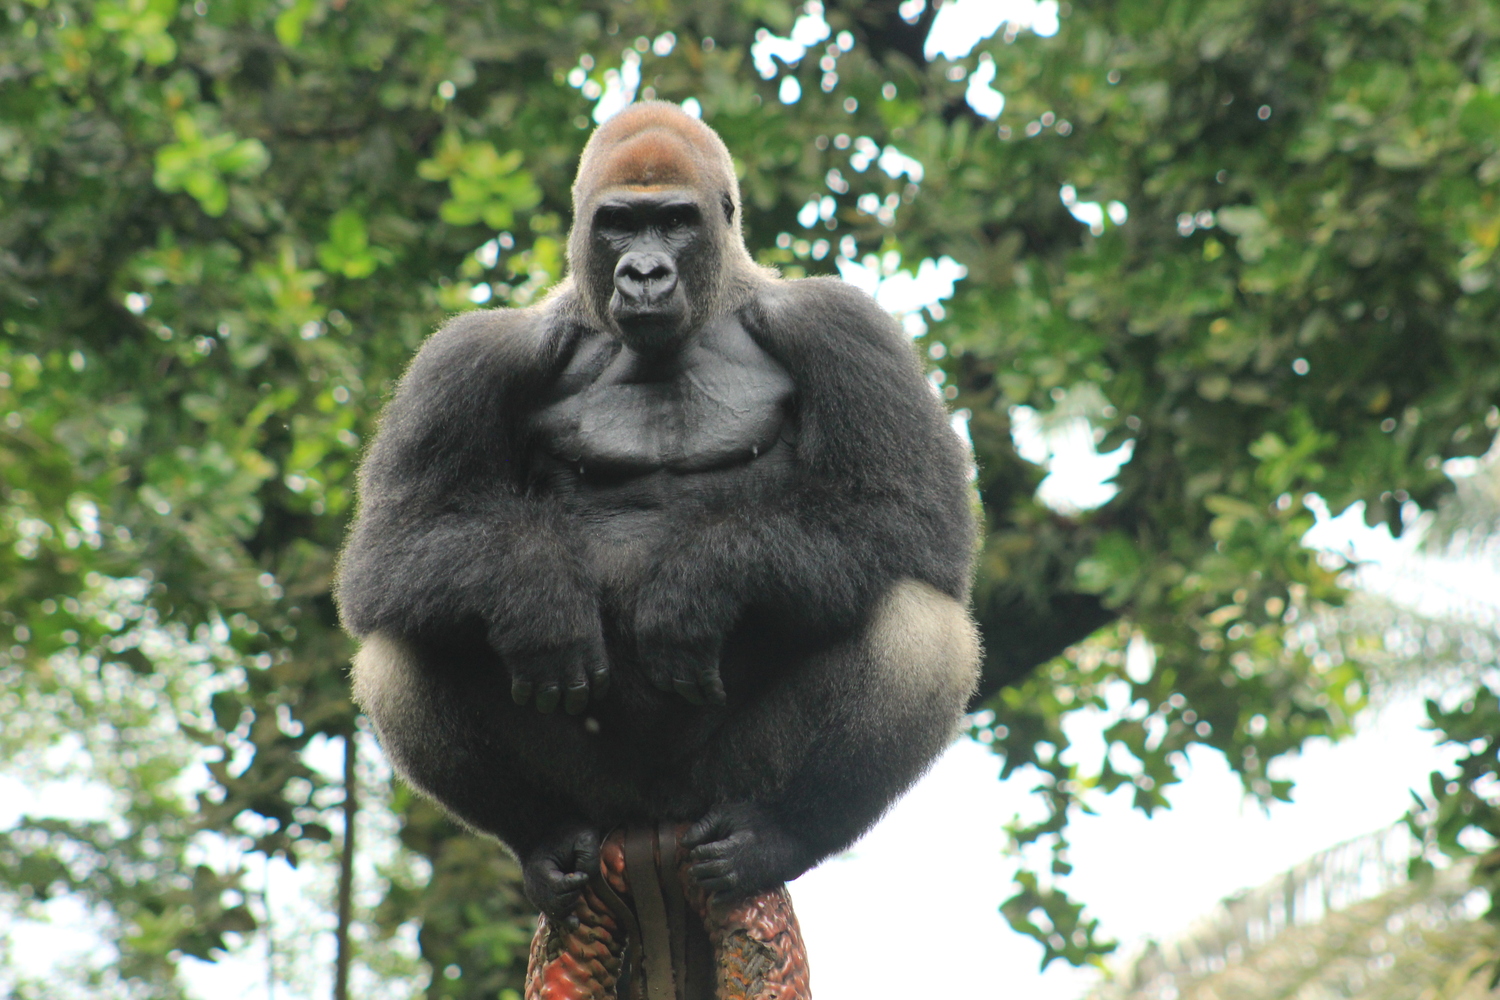 Le gorille est fructivore, il mange beaucoup de bananes au Limbé Wildlife Center © Limbé Wildlife Center